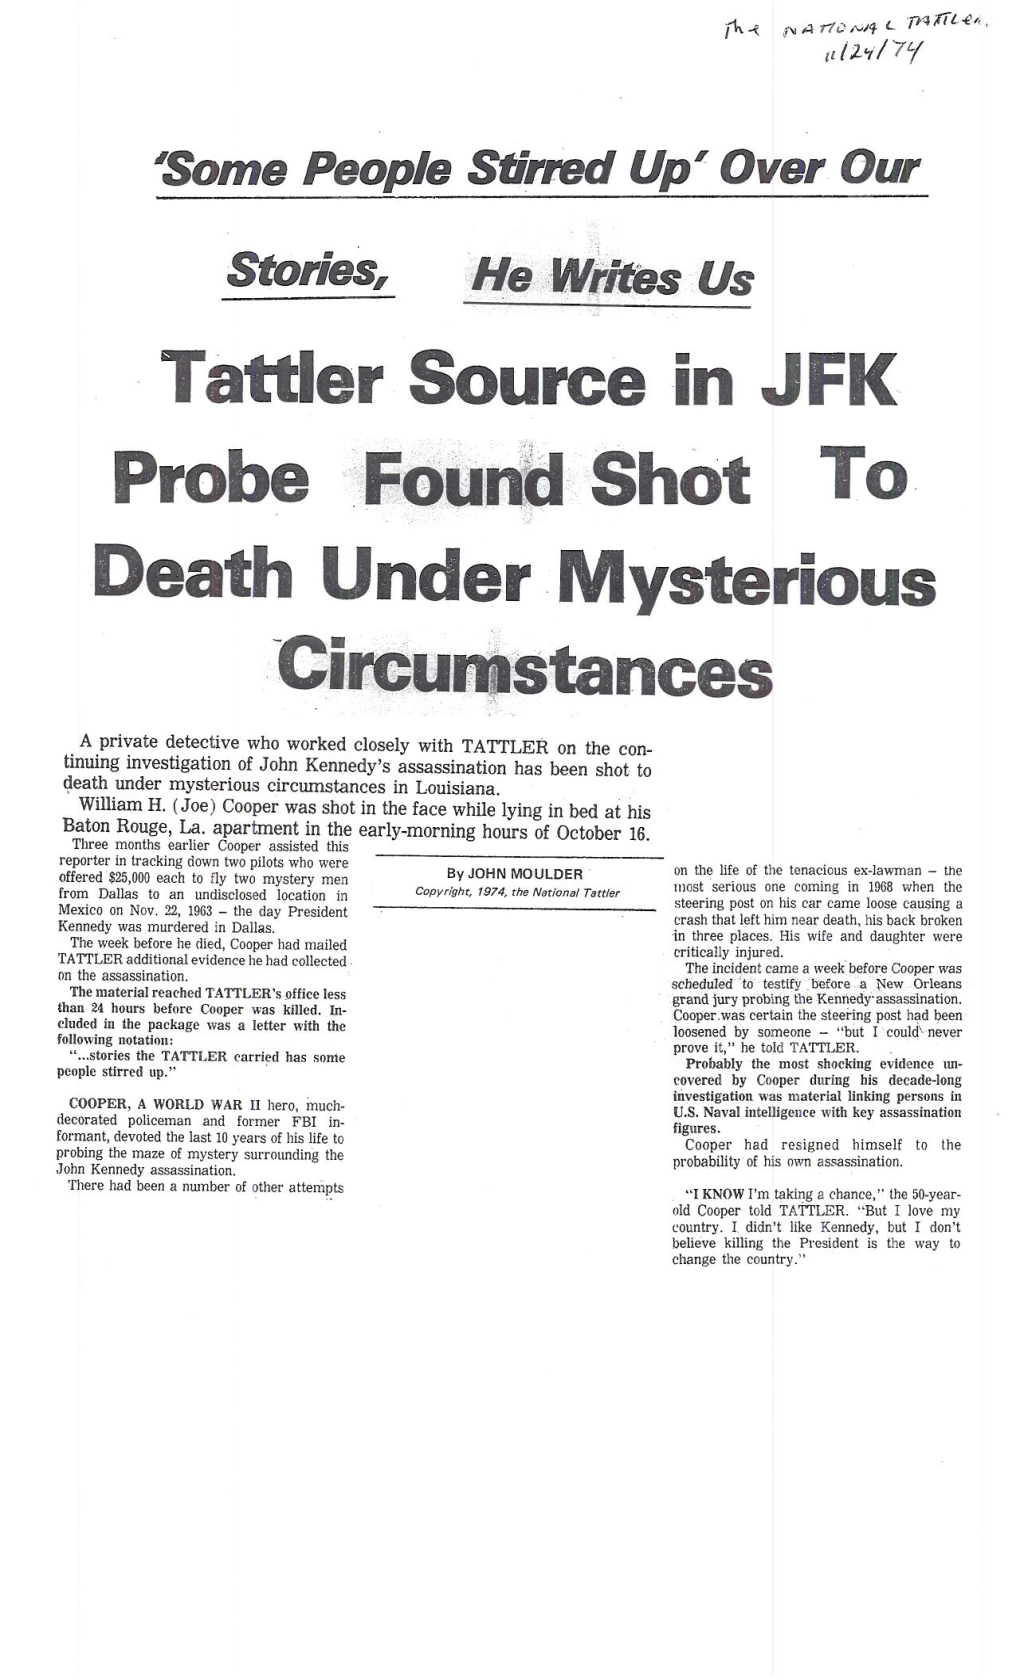 Tattler Source in JFK Probe Found Shot to Death Under Mysterious Circumstances